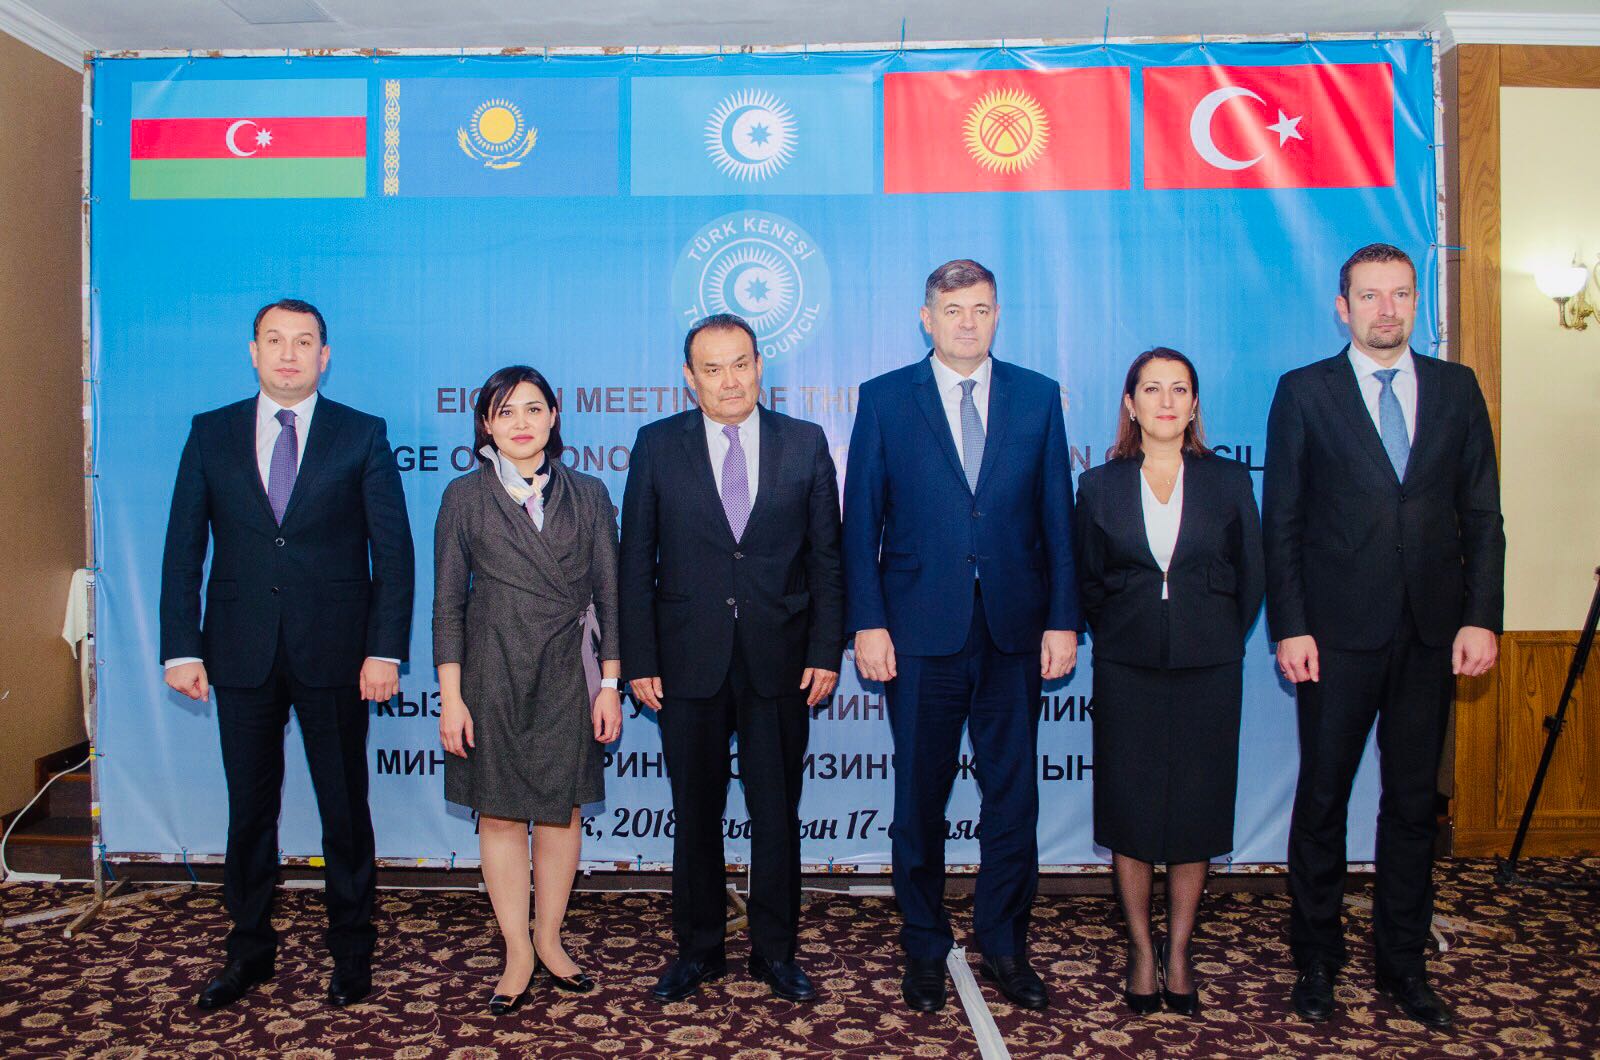 Түркі кеңесінің Экономика министрлерiнiң 8-шi кездесуi 2018 жылдың 17 қазанында Бішкекте өттi